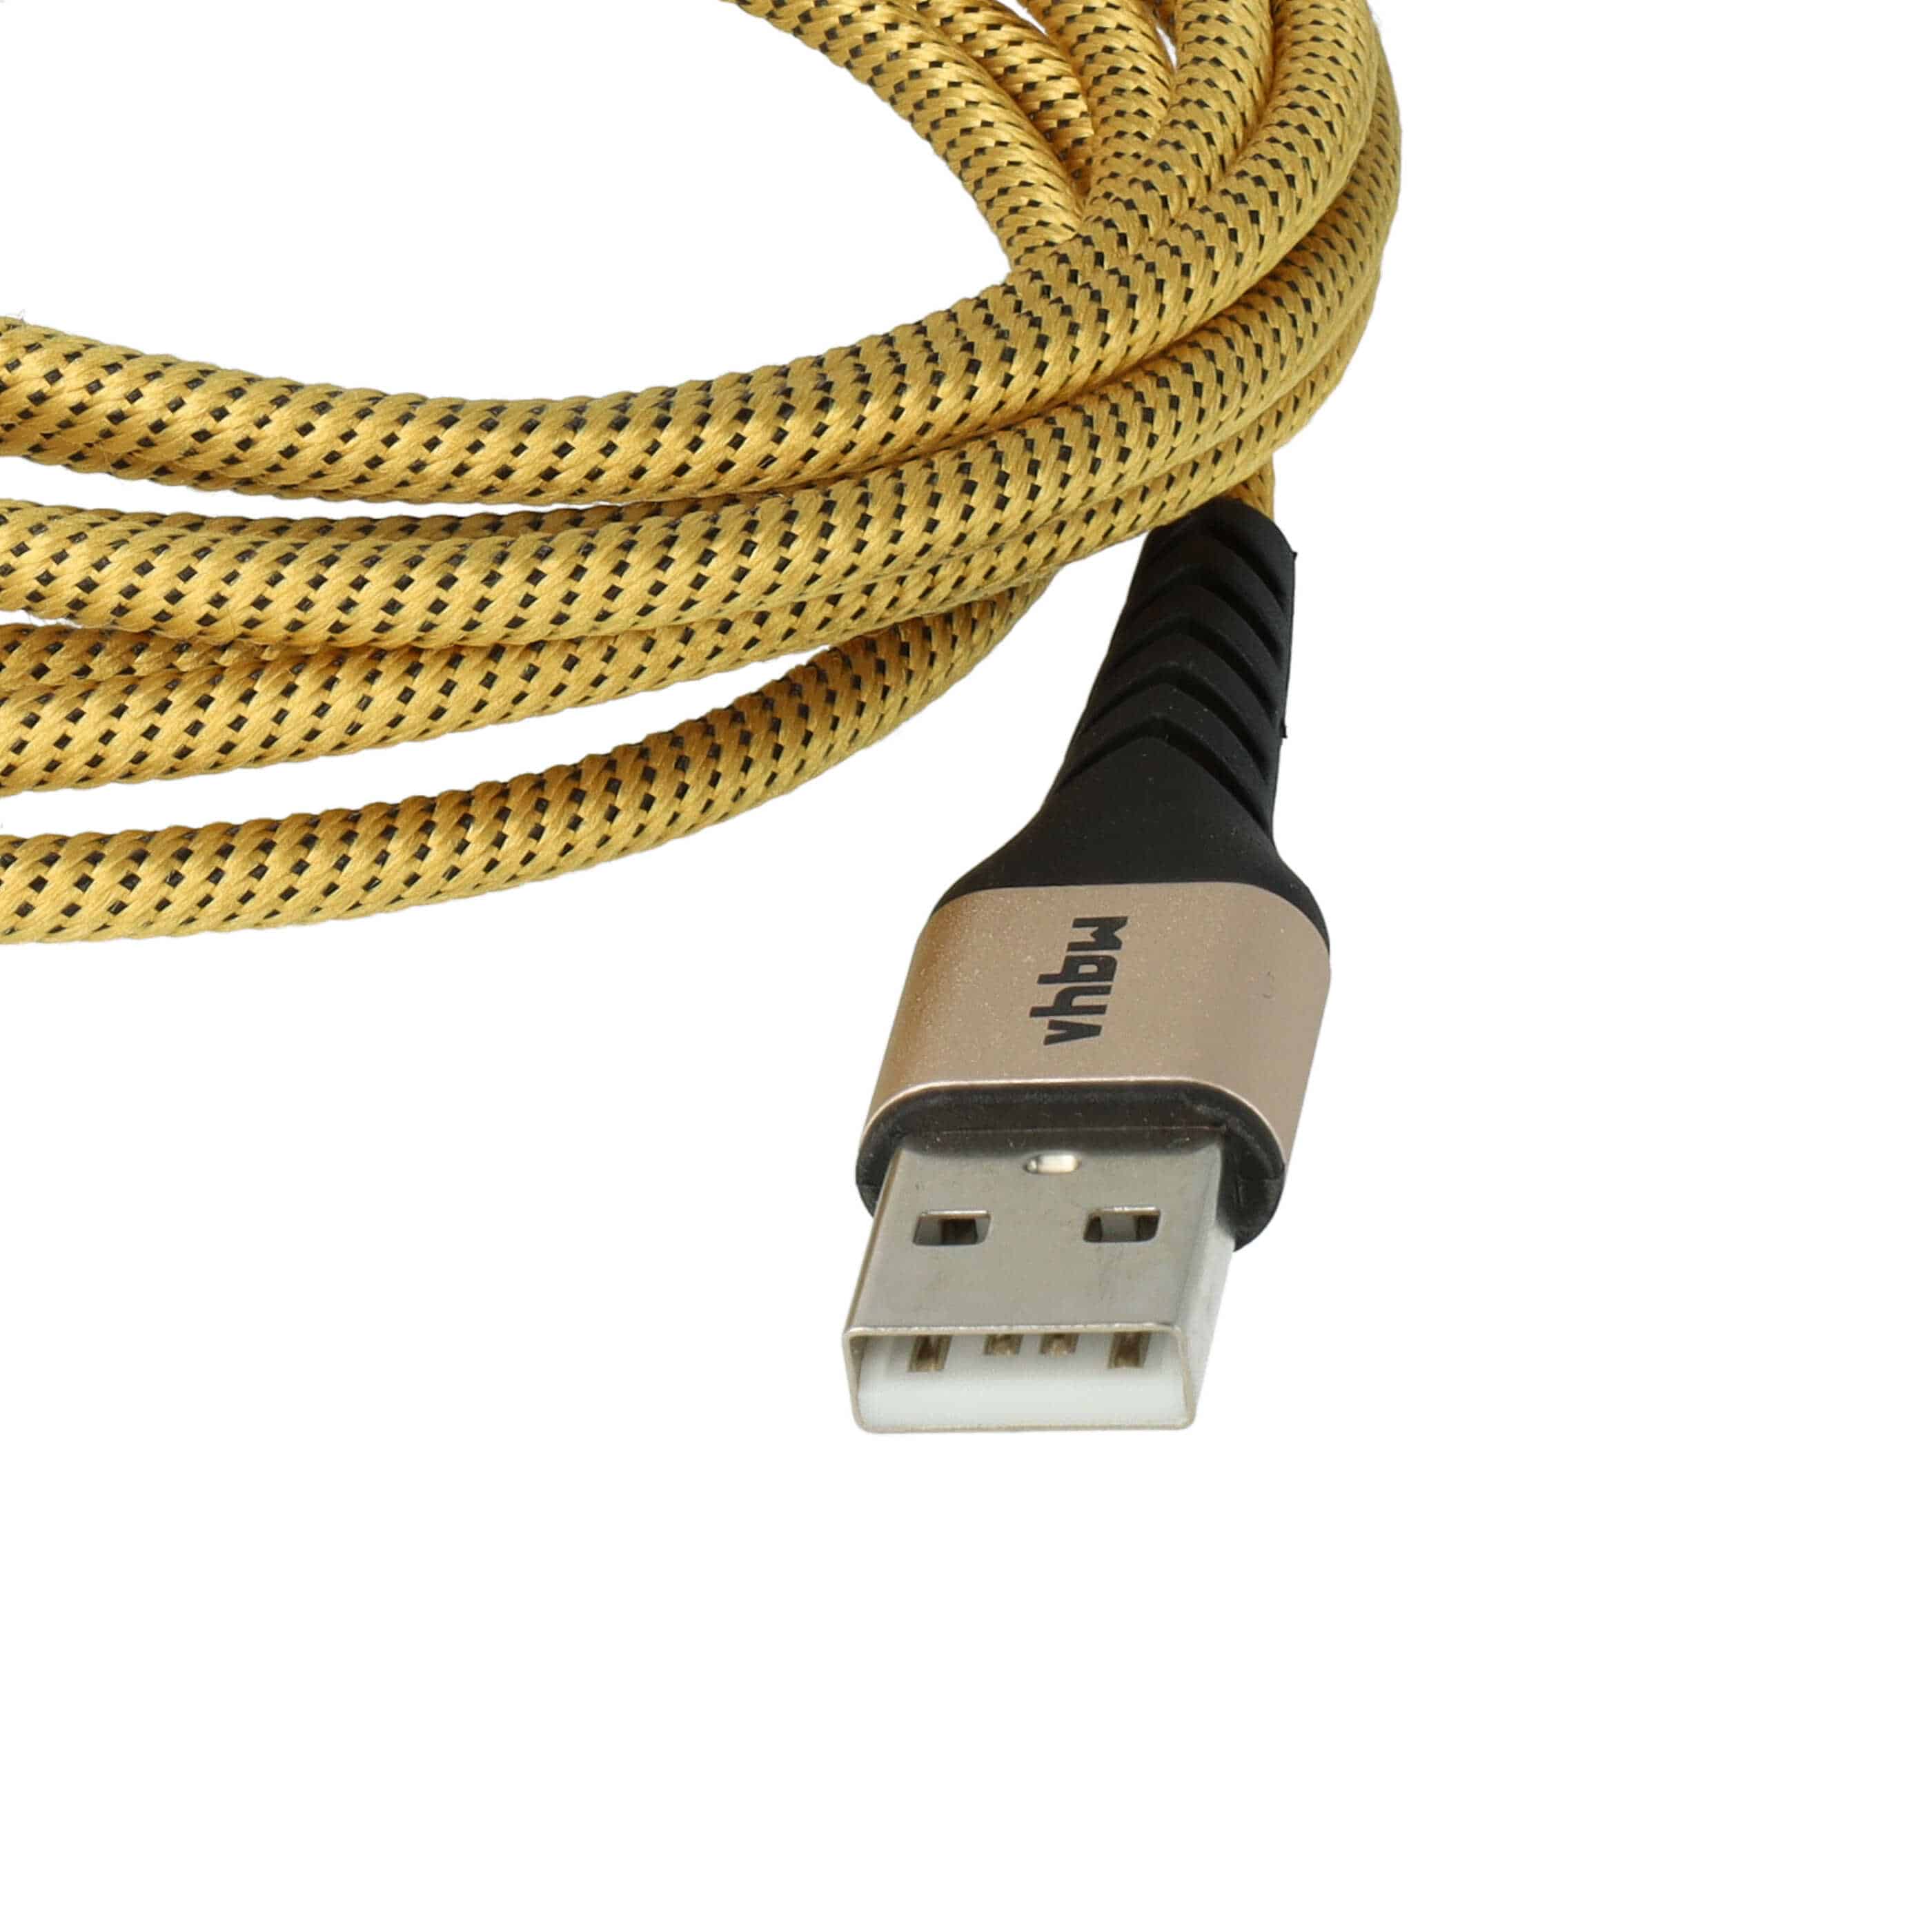 2x Lightning Kabel auf USB A passend für Apple AirPods Apple iOS Geräte - Gelb Schwarz, 180cm